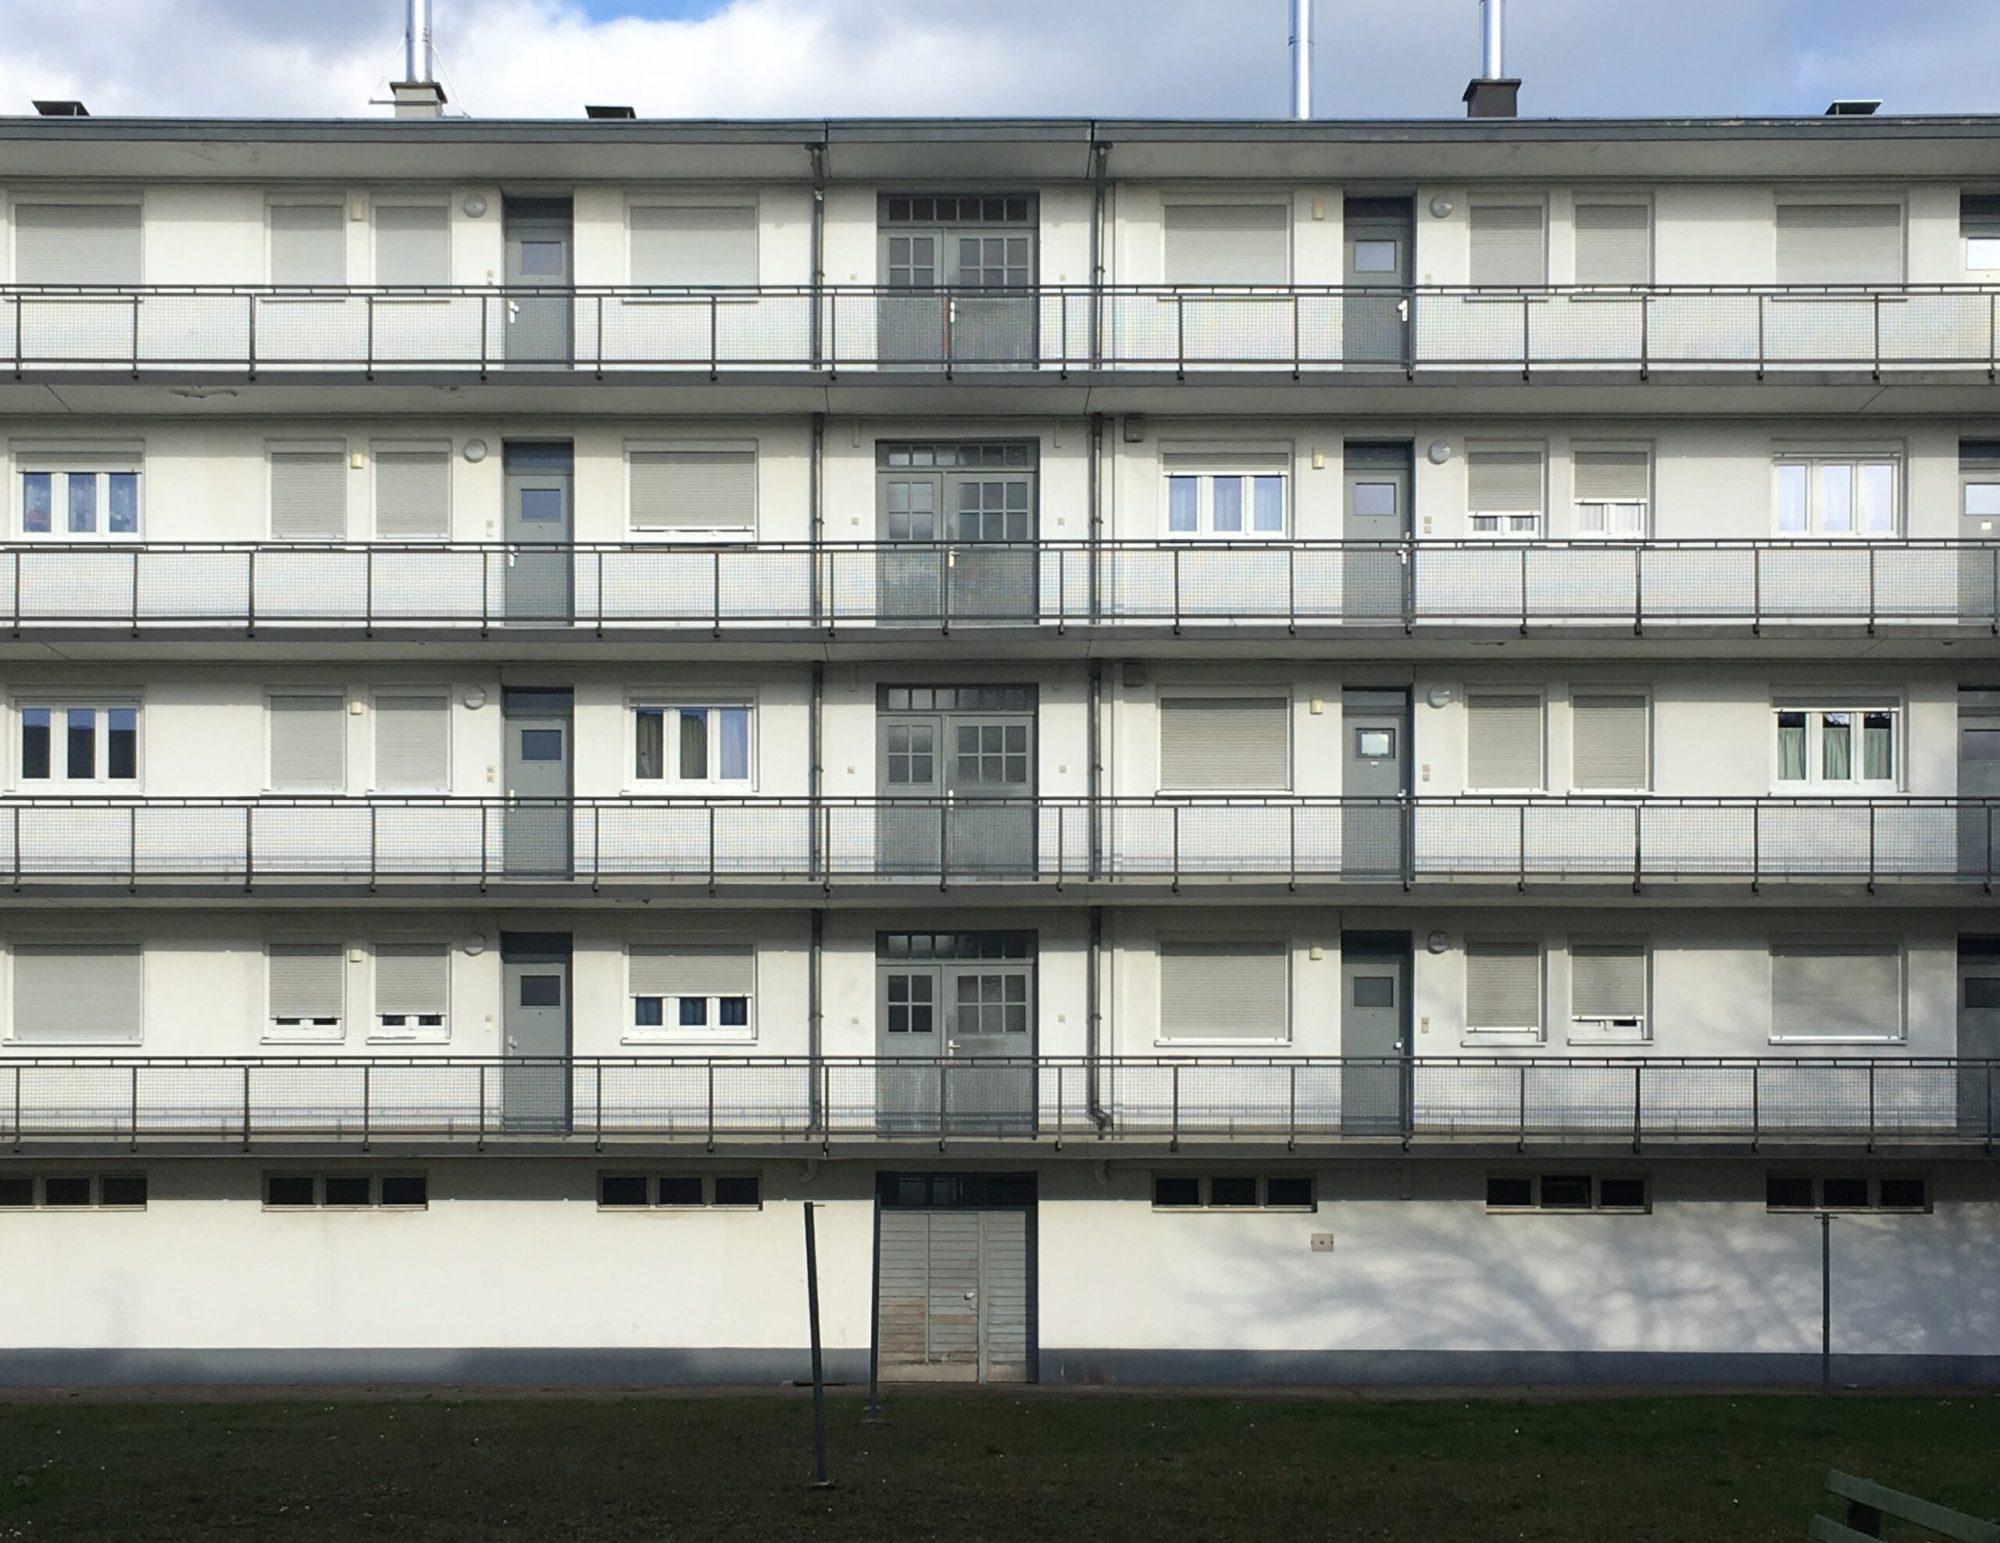 Mehrfamilienhaus, Dammerstock Siedlung Karlsruhe, 1928-1929, Architekt: Walter Gropius